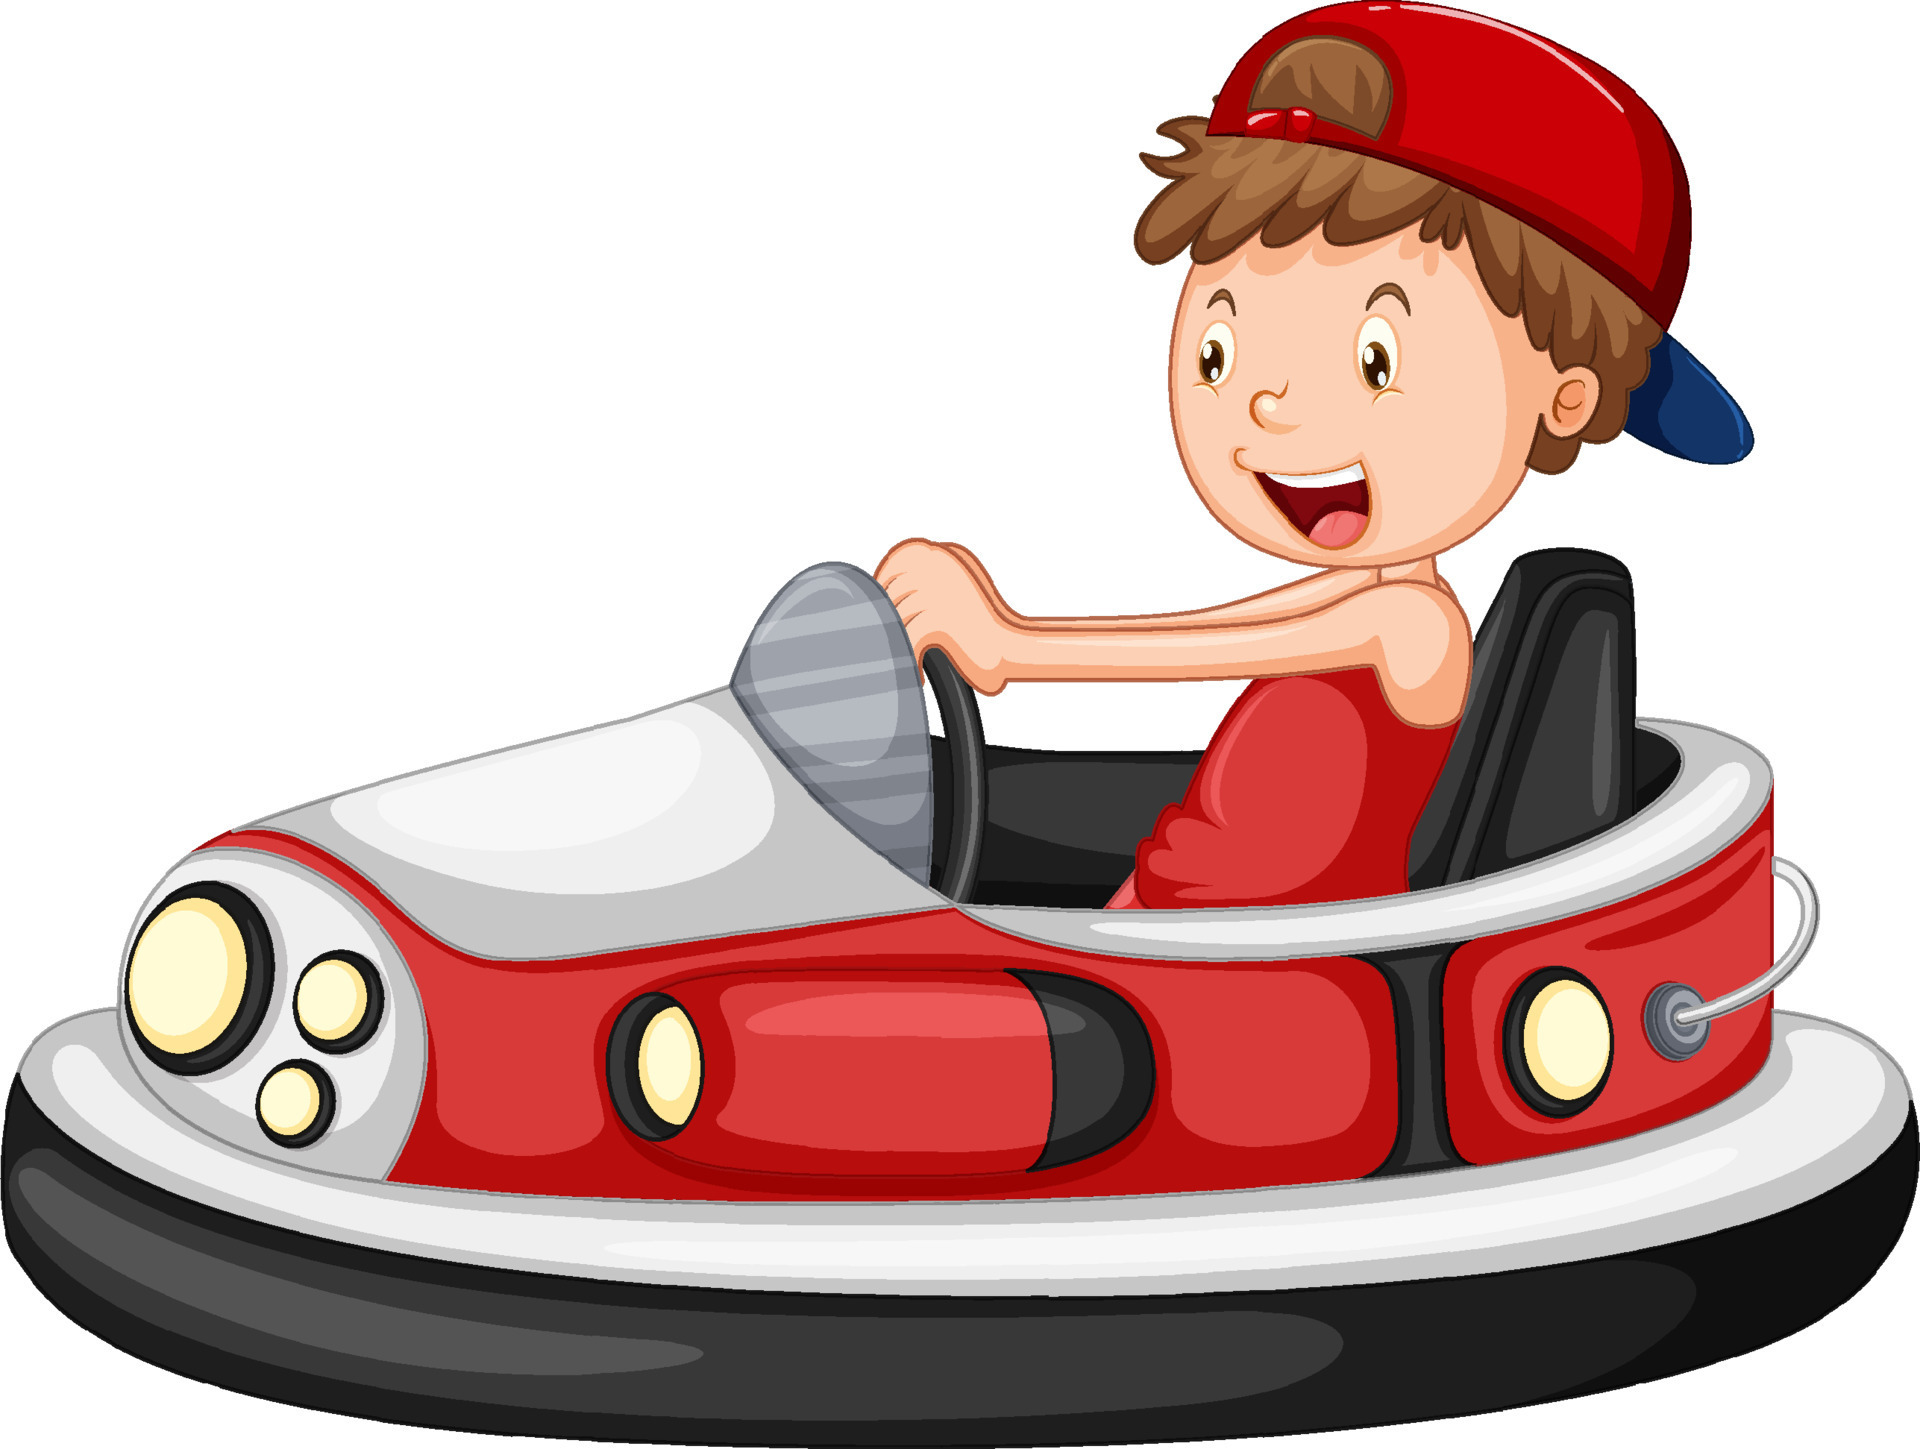 A boy riding bumper car cartoon 8337005 Vector Art at Vecteezy